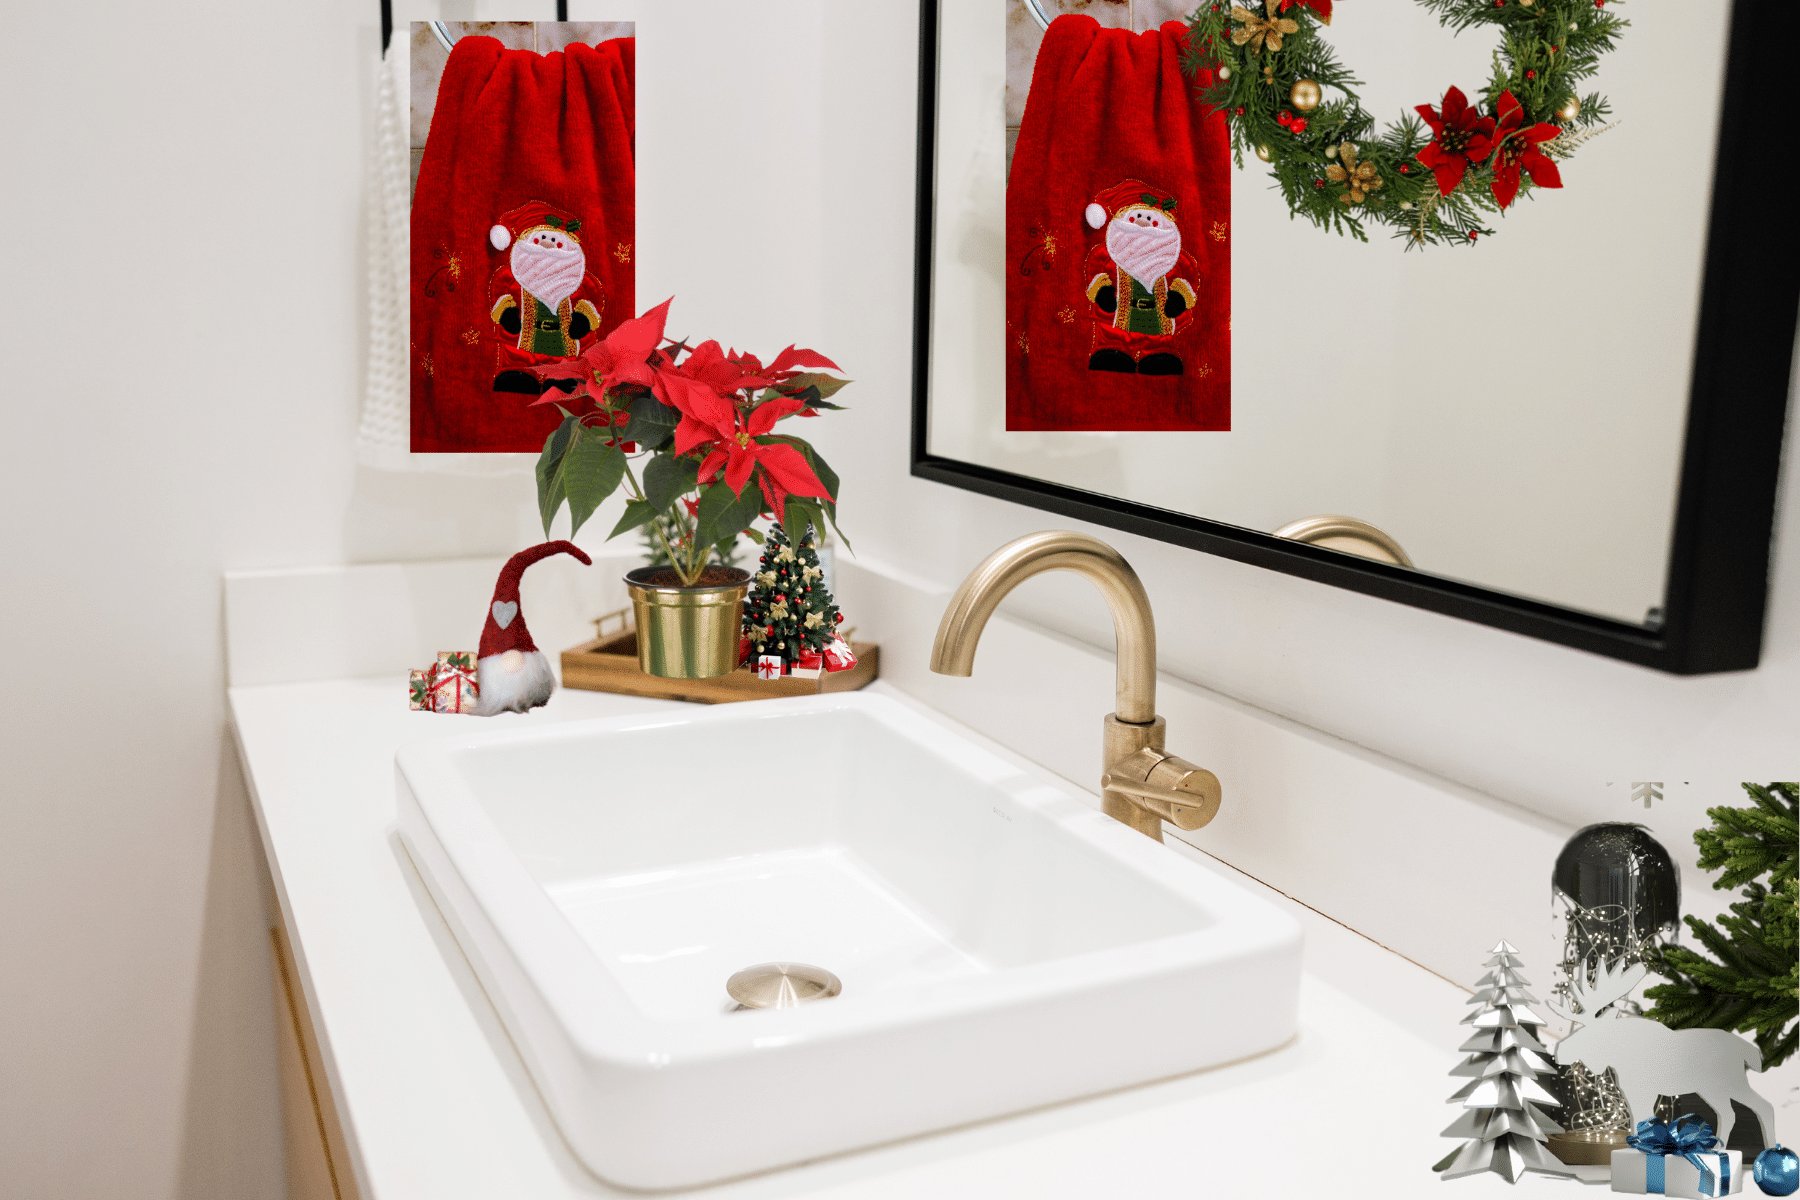 DIY Christmas bathroom decor ideas sink area